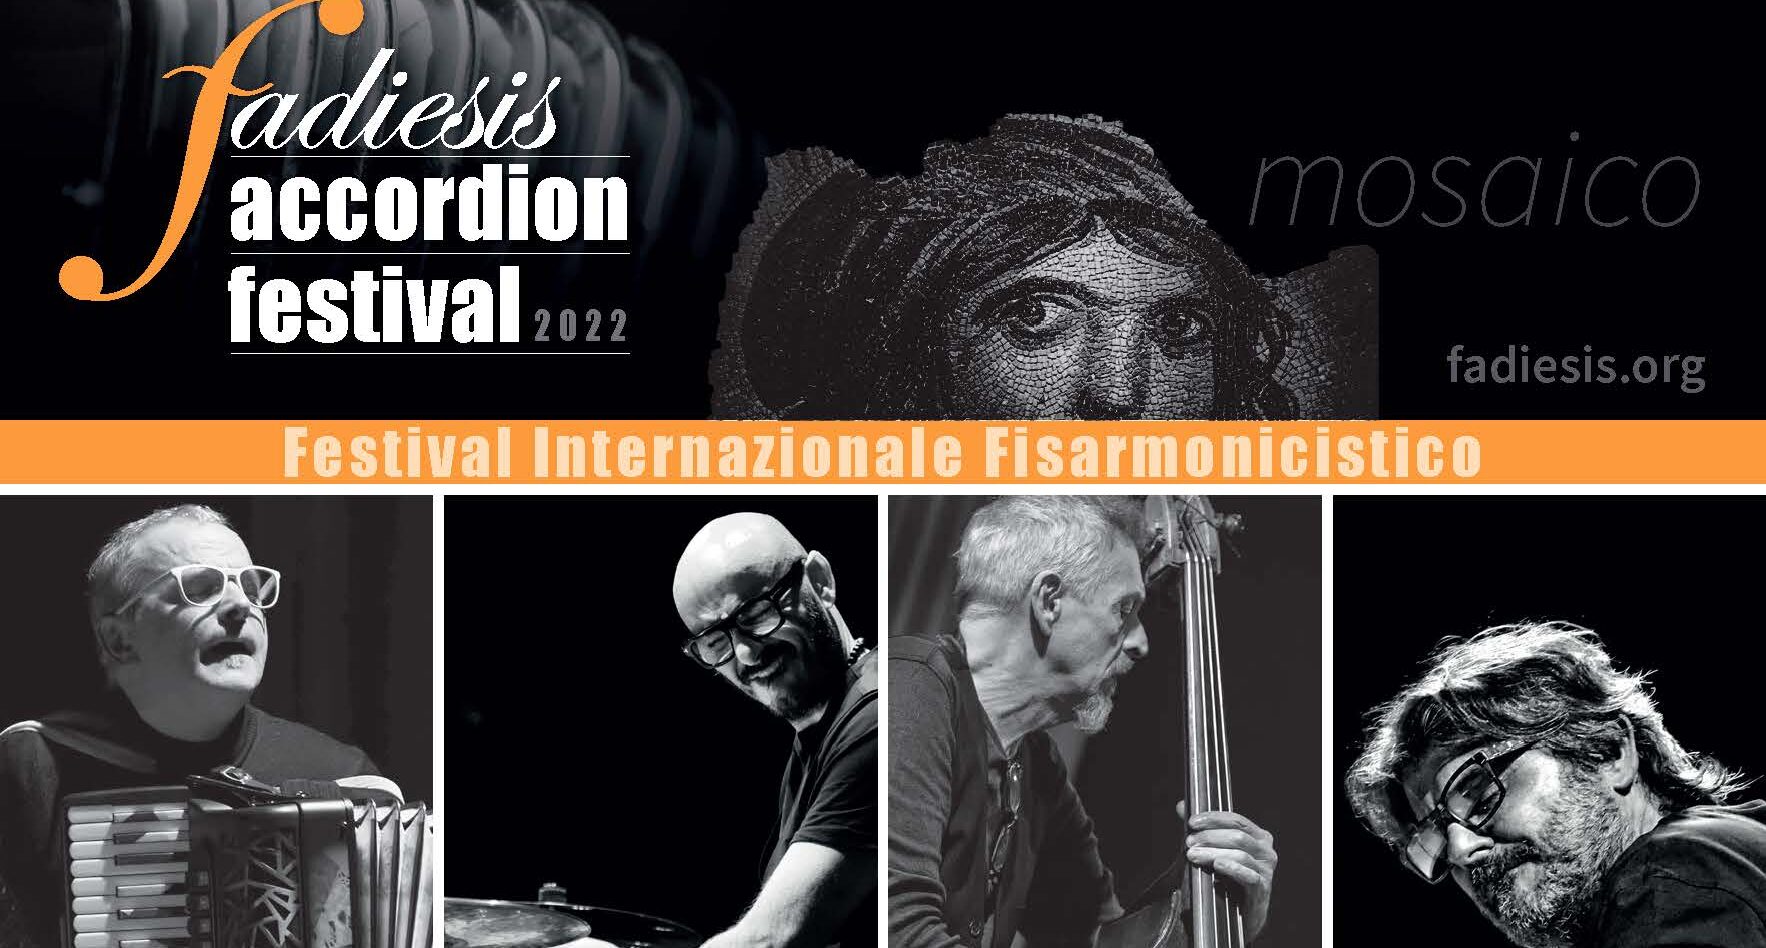 Fadiesis Accordion festival 2022 in collaborazione con l’Onyx Jazz Club presenta la fisarmonica jazz di Renzo Ruggieri